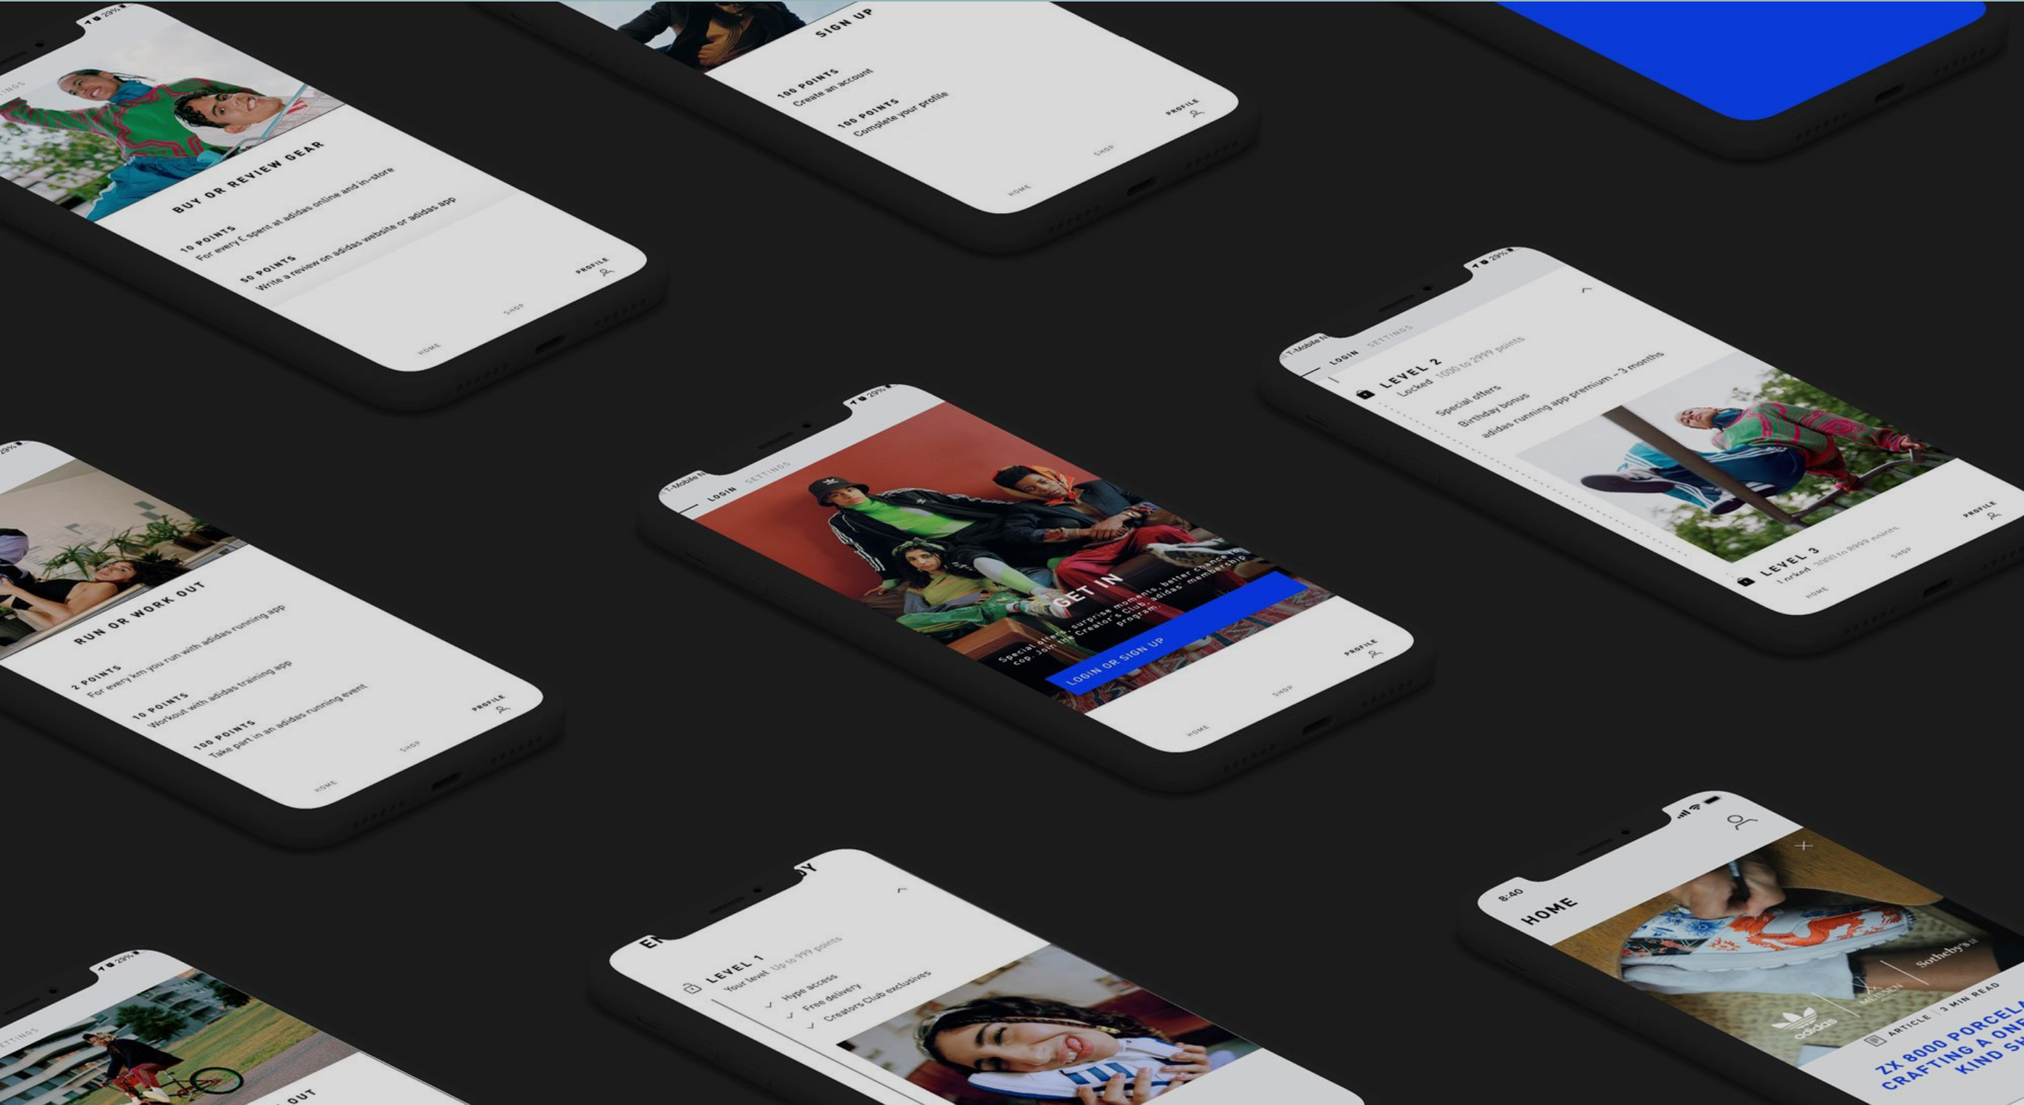 Concept Art, Mobile Design, UI Design and UX Design: FIFA Mobile App by  Julien